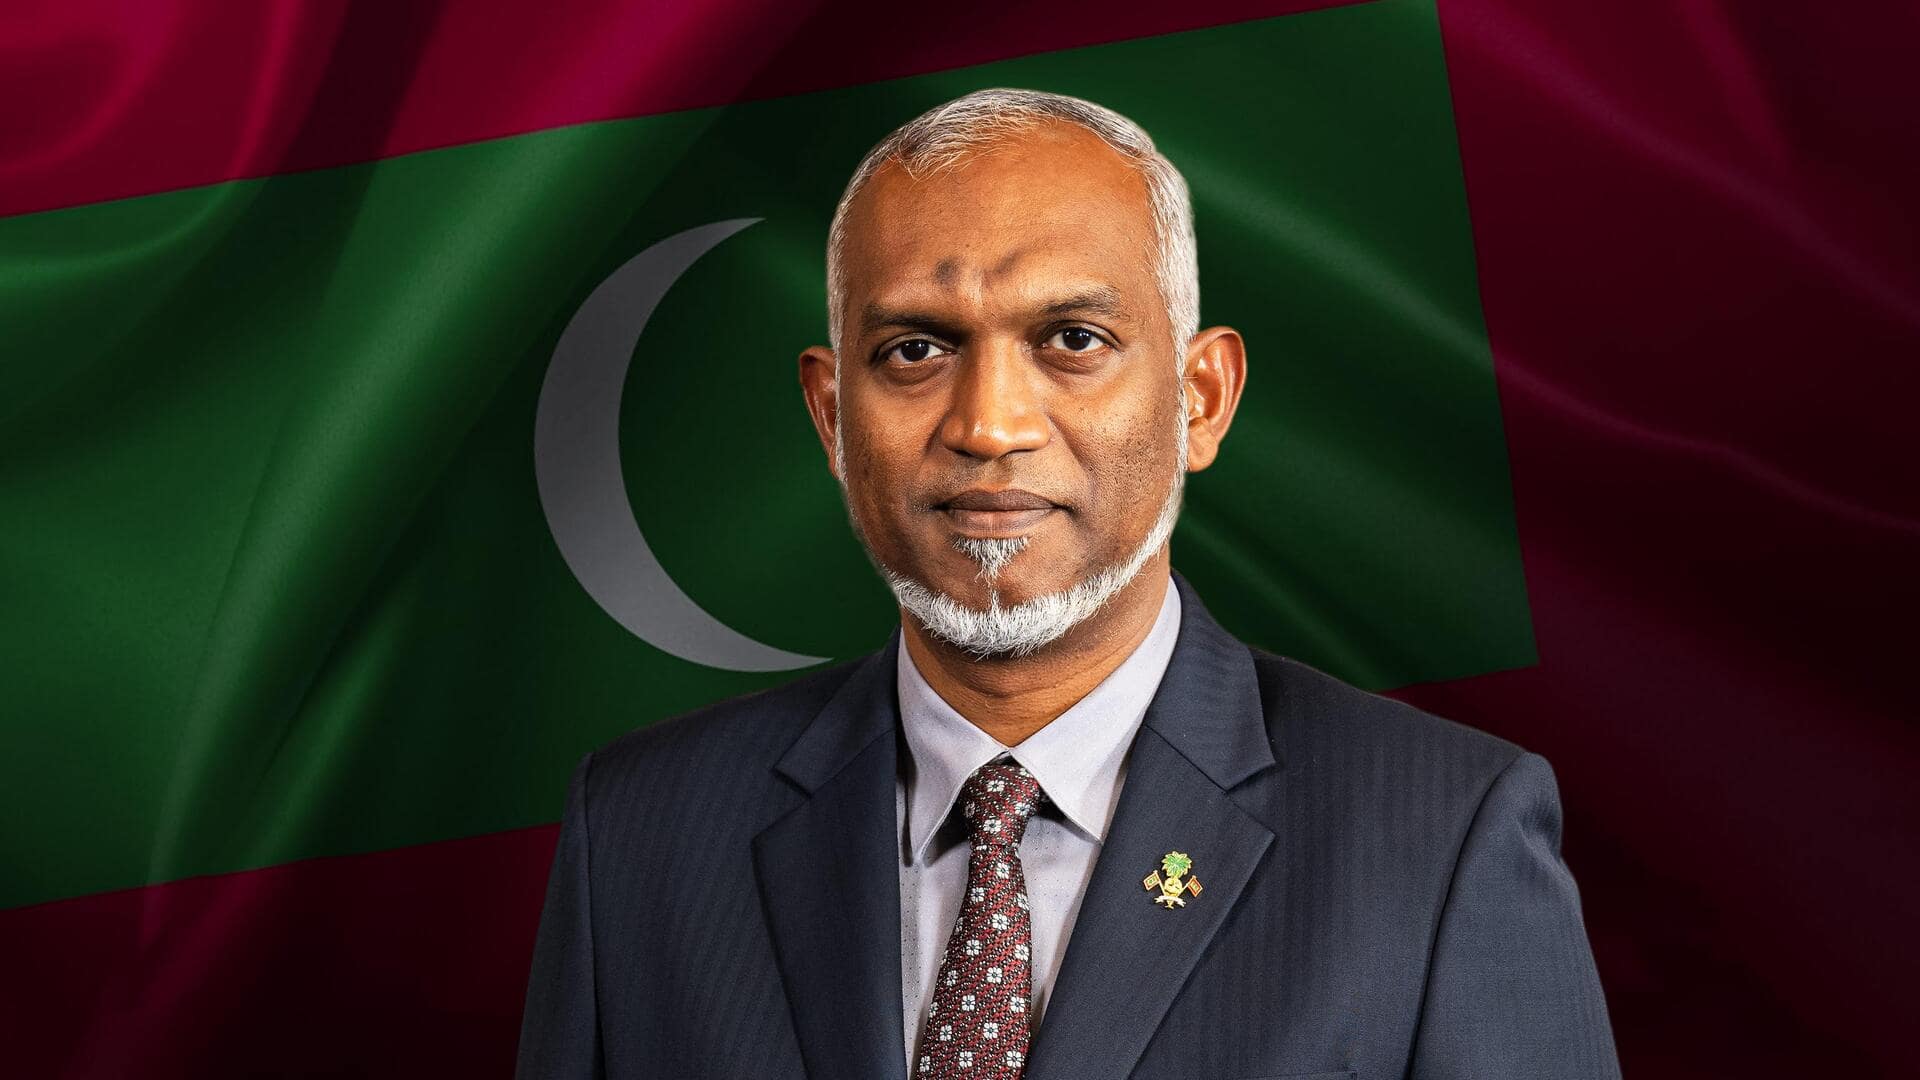 No one can bully us: Maldives president amid India row 